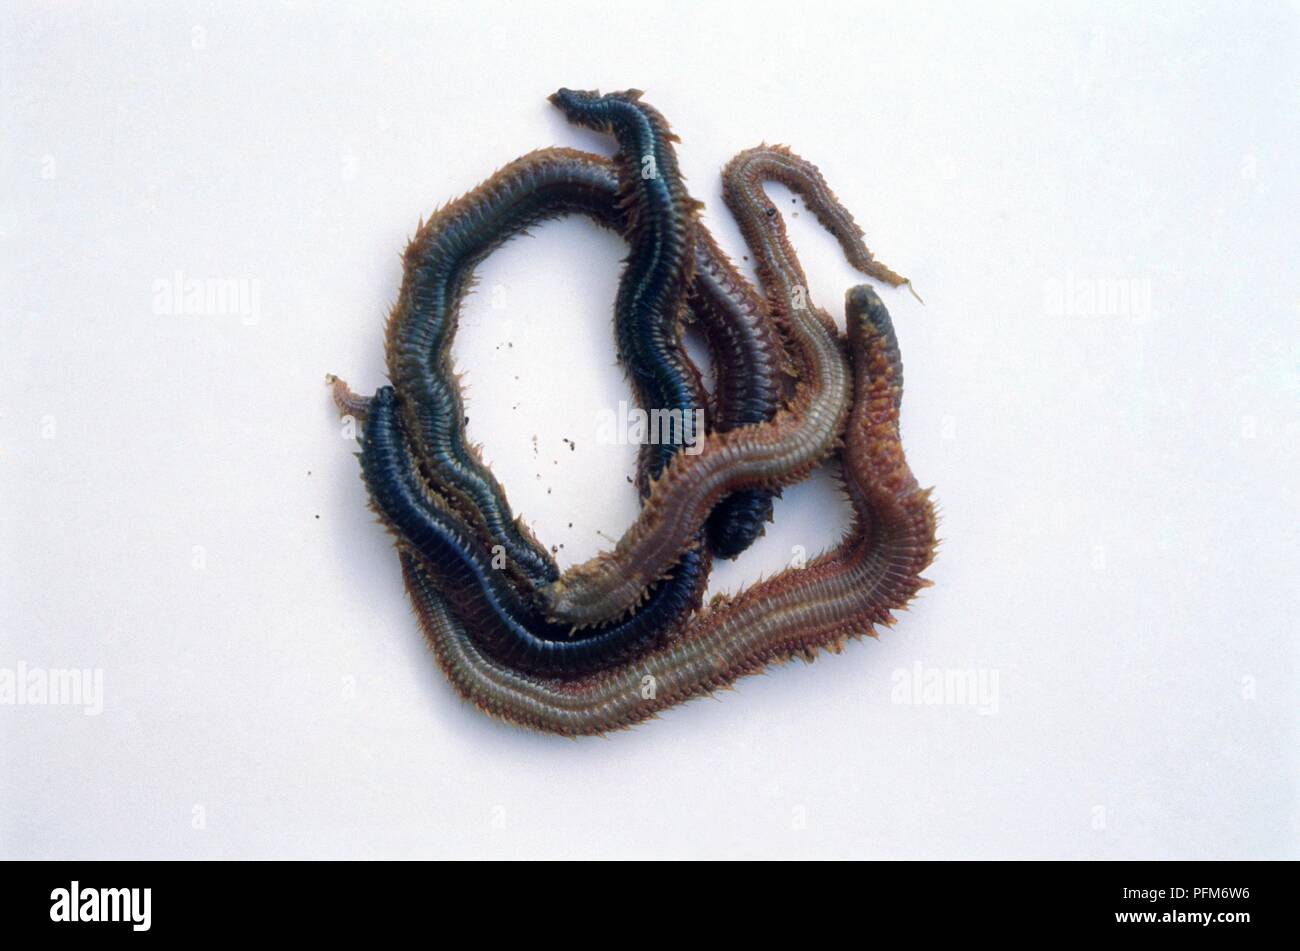 King ragworms (Nereis virens) Stock Photo